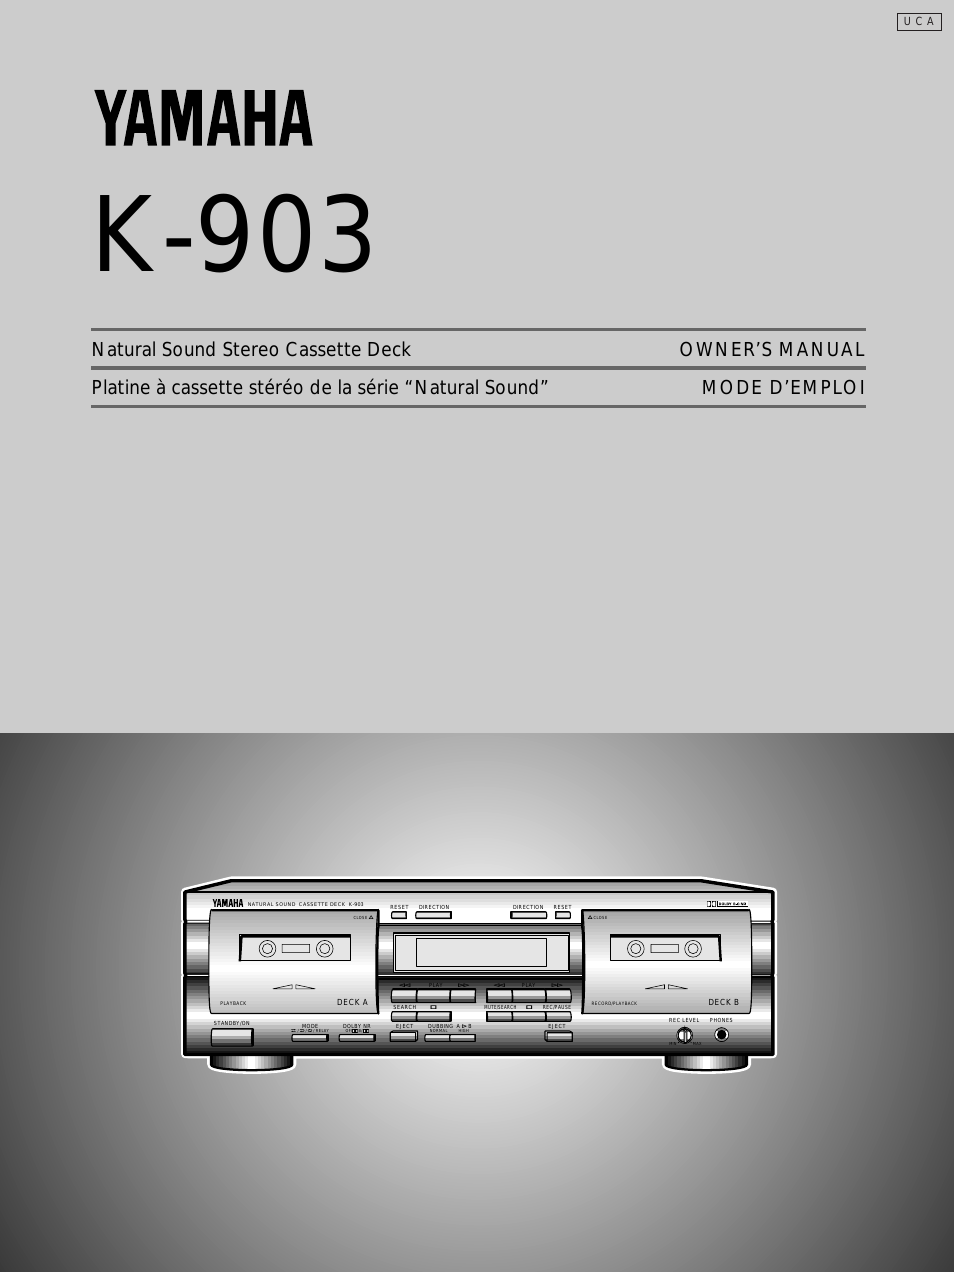 K-903